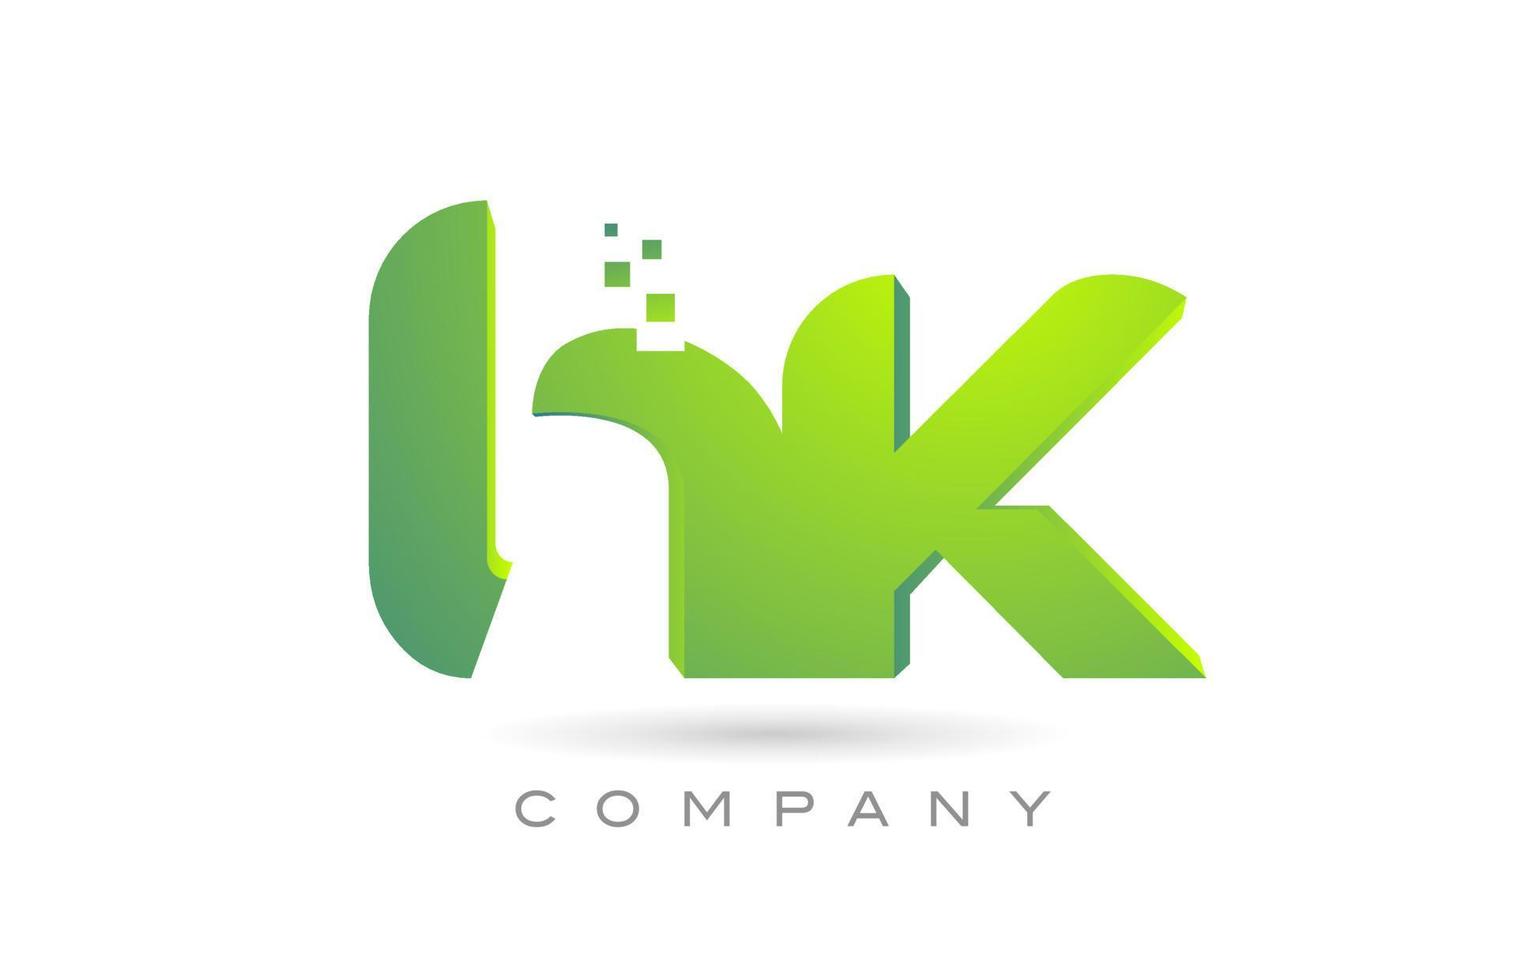 beigetretenes hk-Alphabet-Buchstaben-Logo-Symbol-Kombinationsdesign mit Punkten und grüner Farbe. kreative Vorlage für Unternehmen und Unternehmen vektor